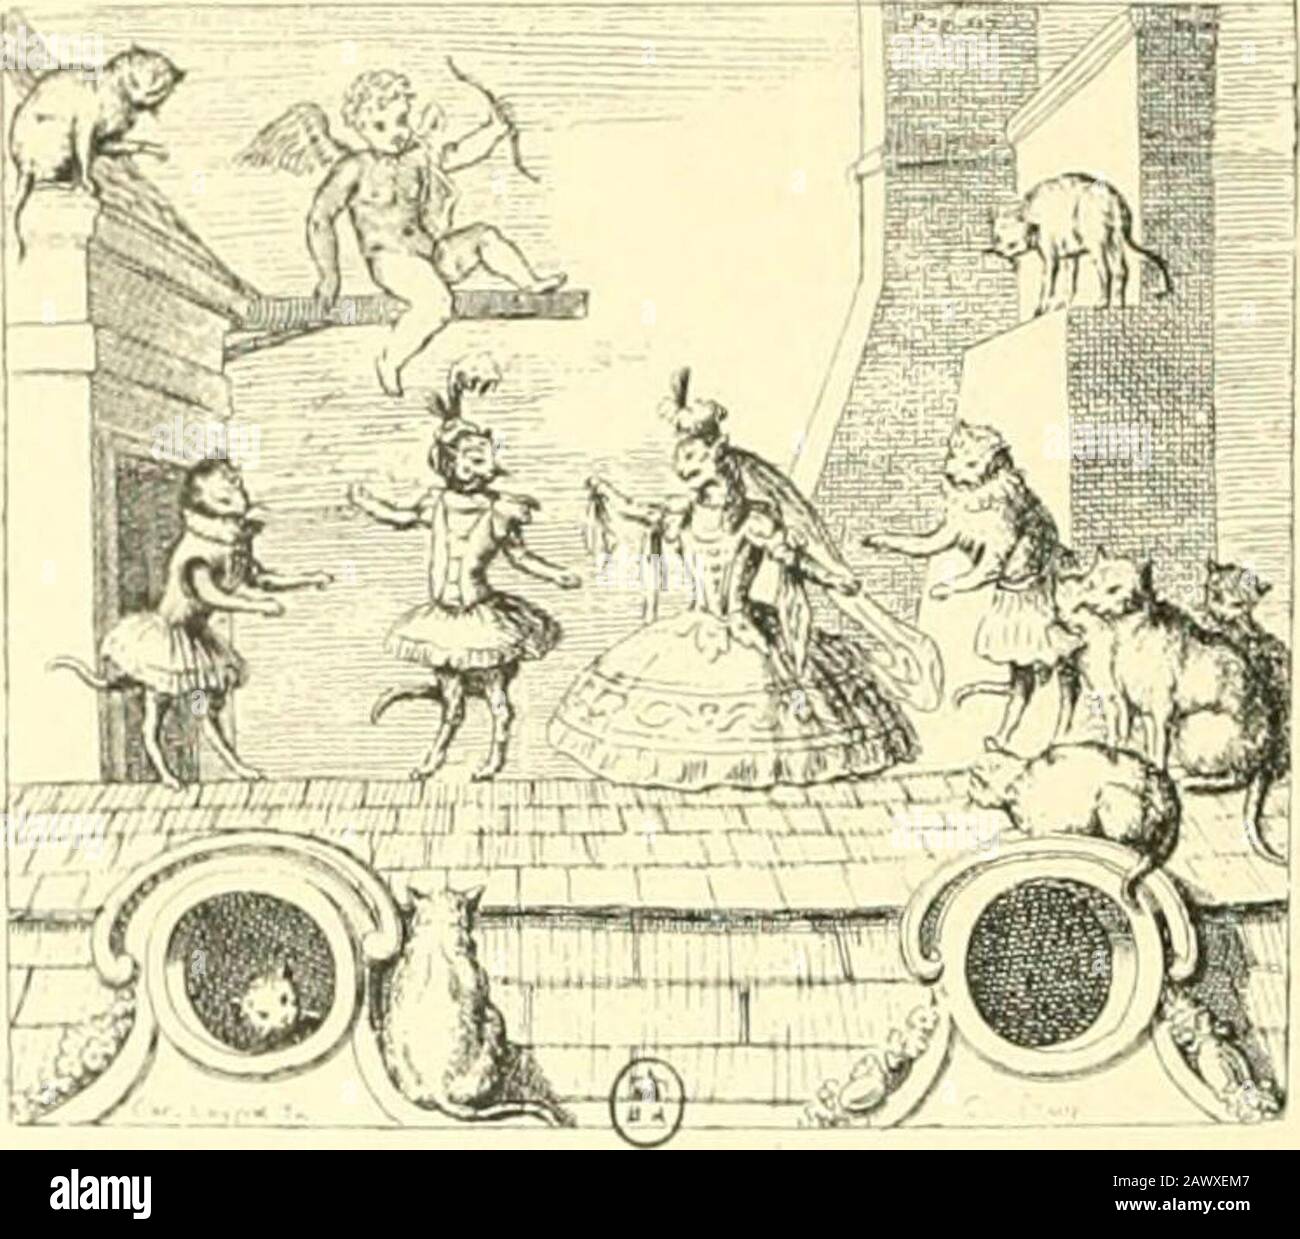 L'estampe satirique et la caricature en France au 18e siècle; préfde  Maurice Tourneux . a représentéesdans ses taljlcauA. Hii seul que Walteau  les a observées avec unecuriosilé anuisée cl lon renianiue chez